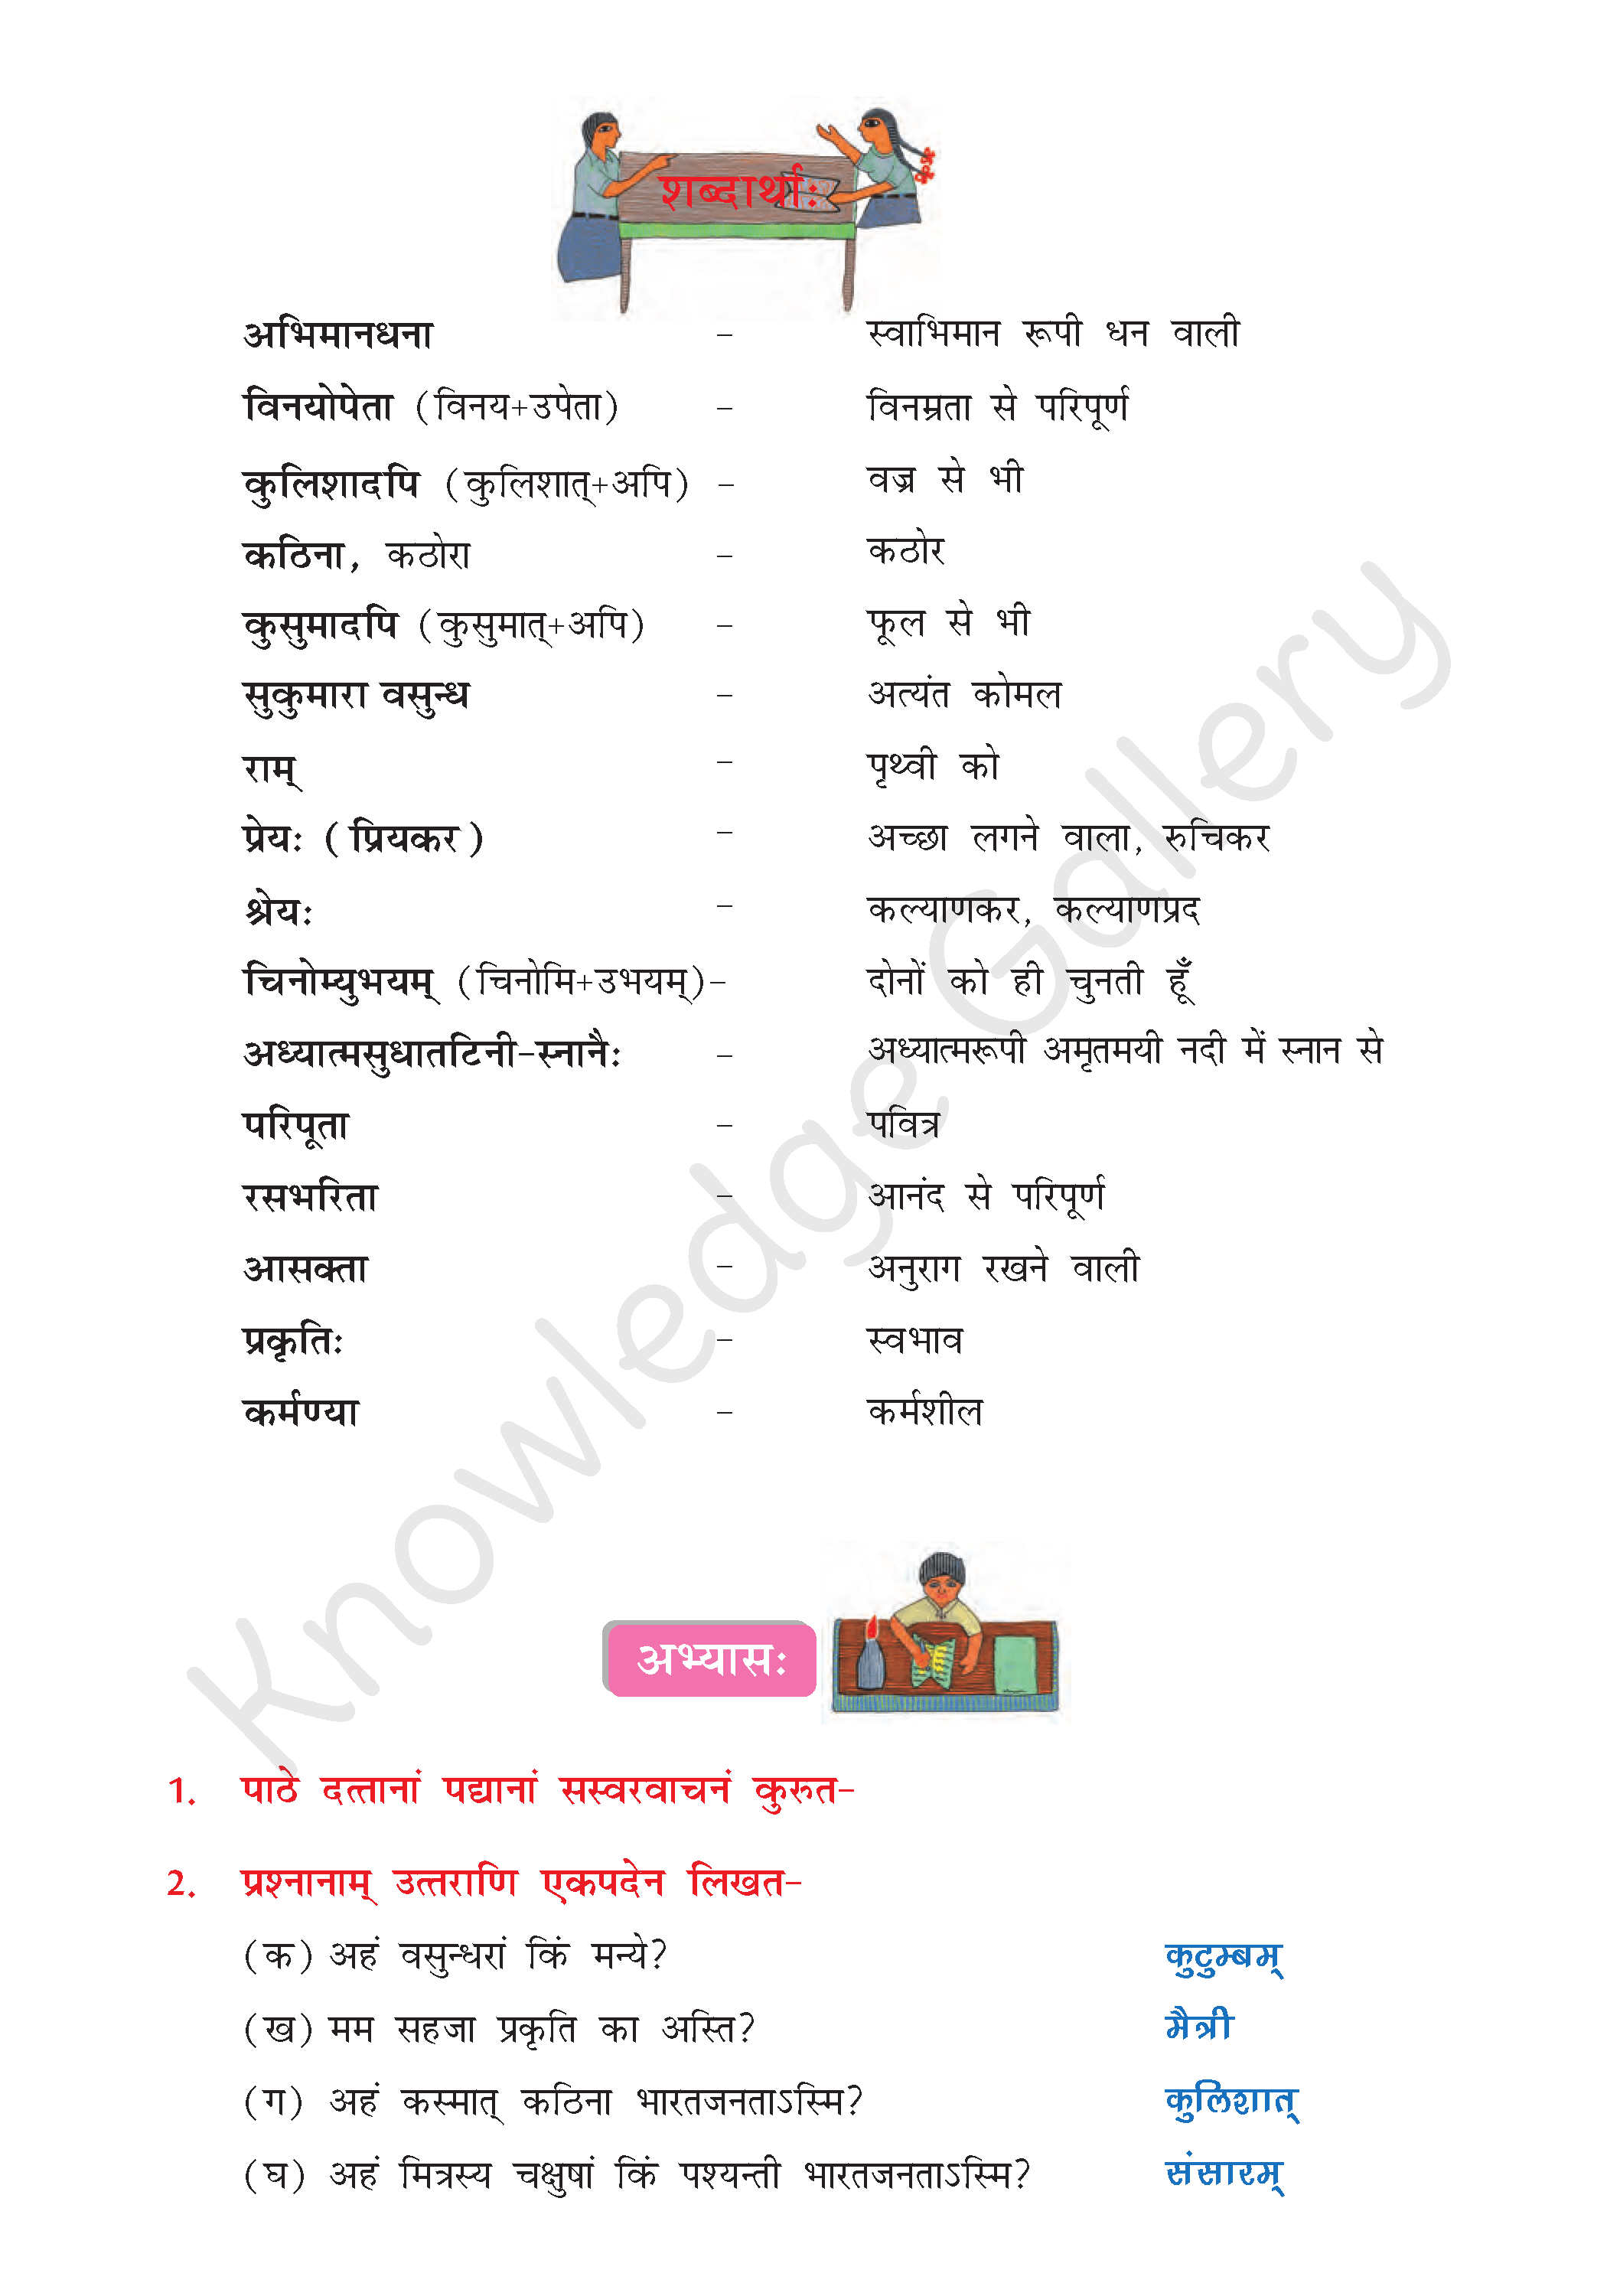 NCERT Solution For Class 8 Sanskrit Chapter 7 part 3